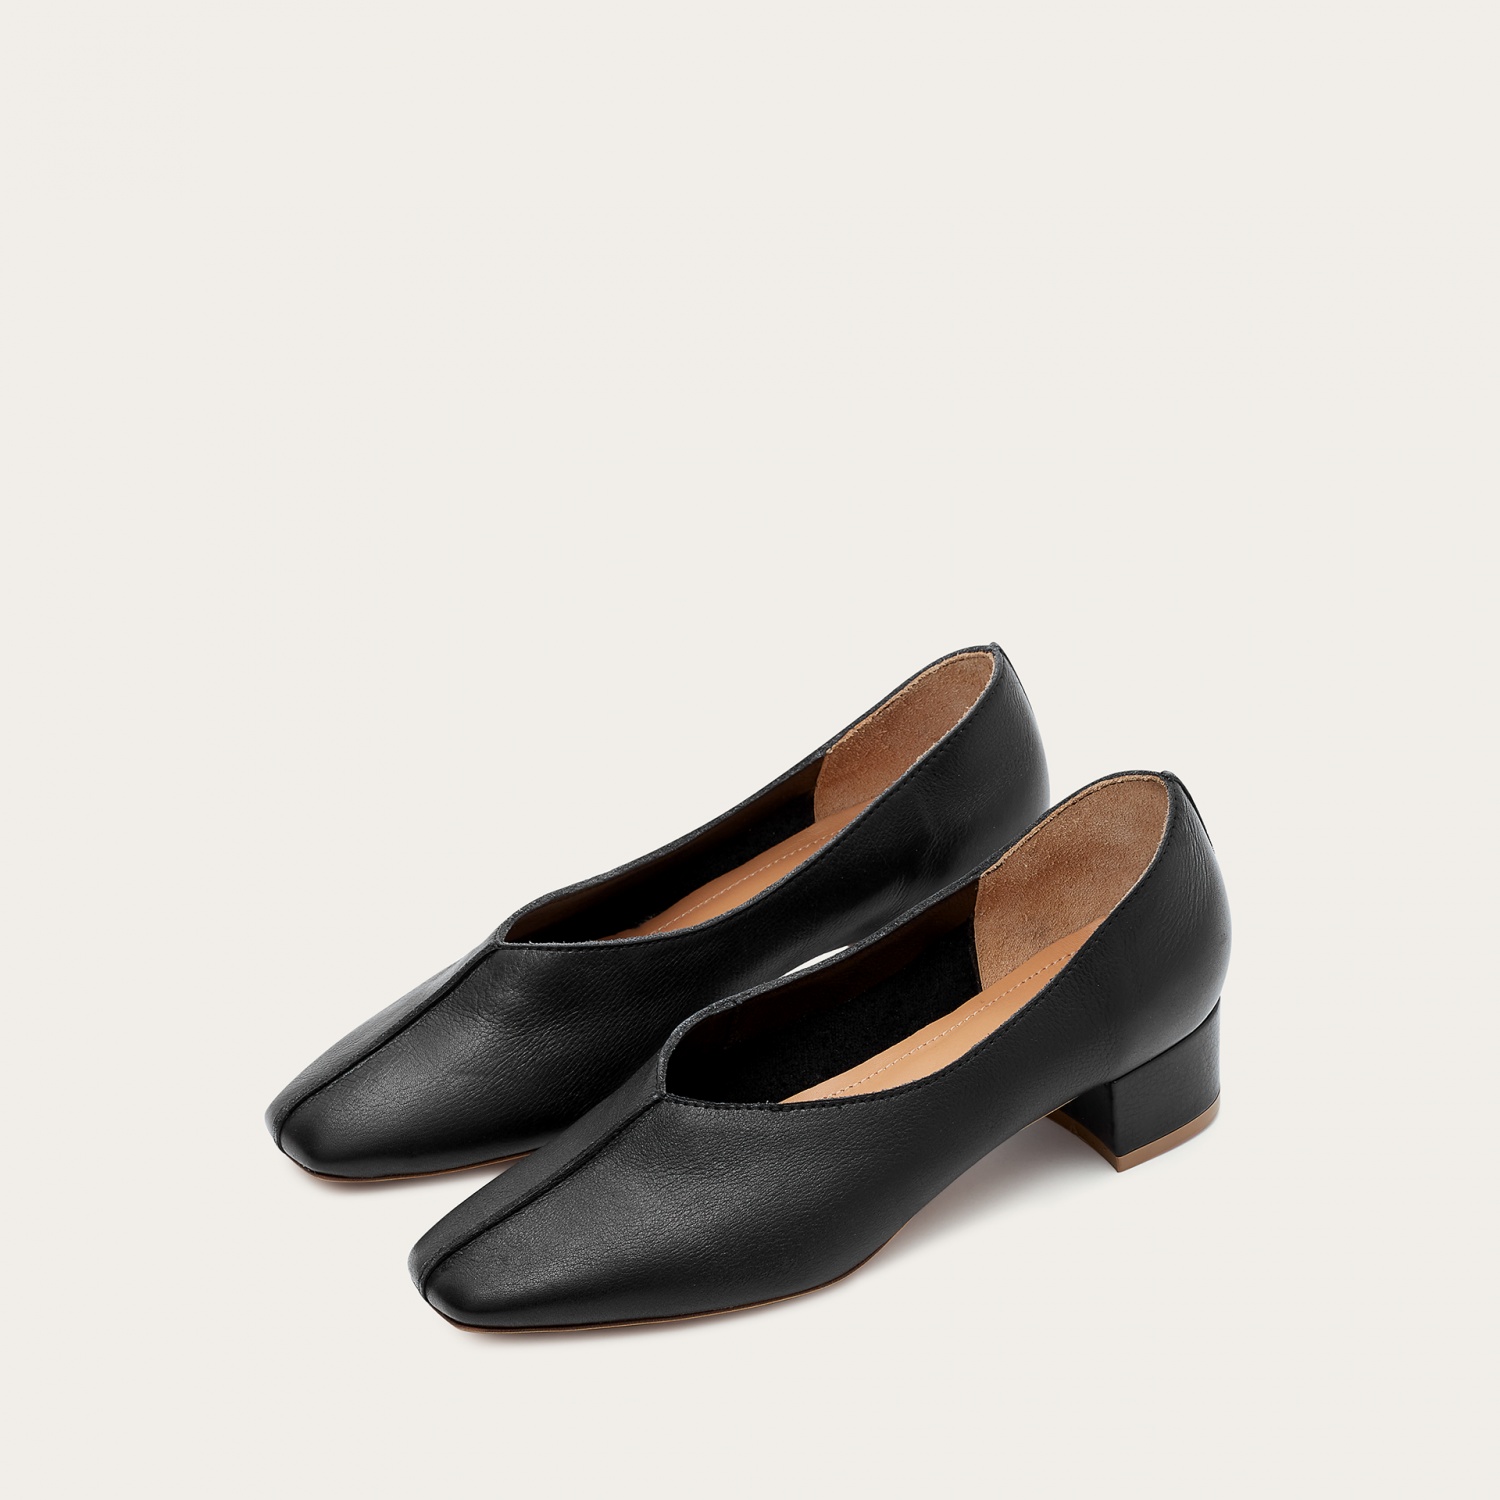  Apulia Heels, black-3 